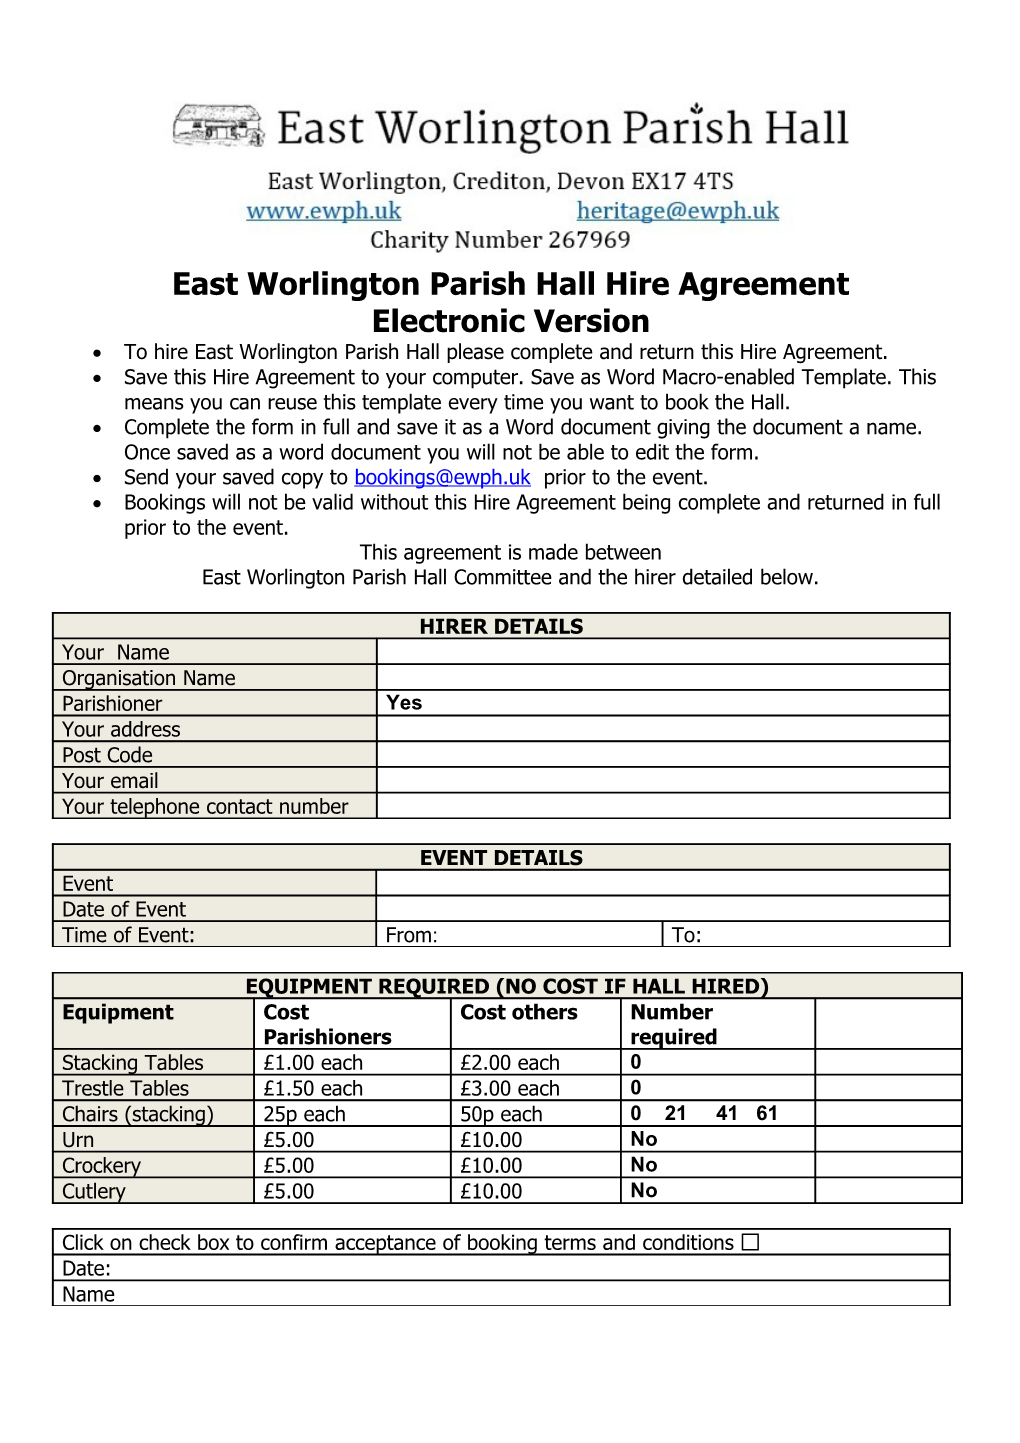 East Worlington Parish Hall Hire Agreement